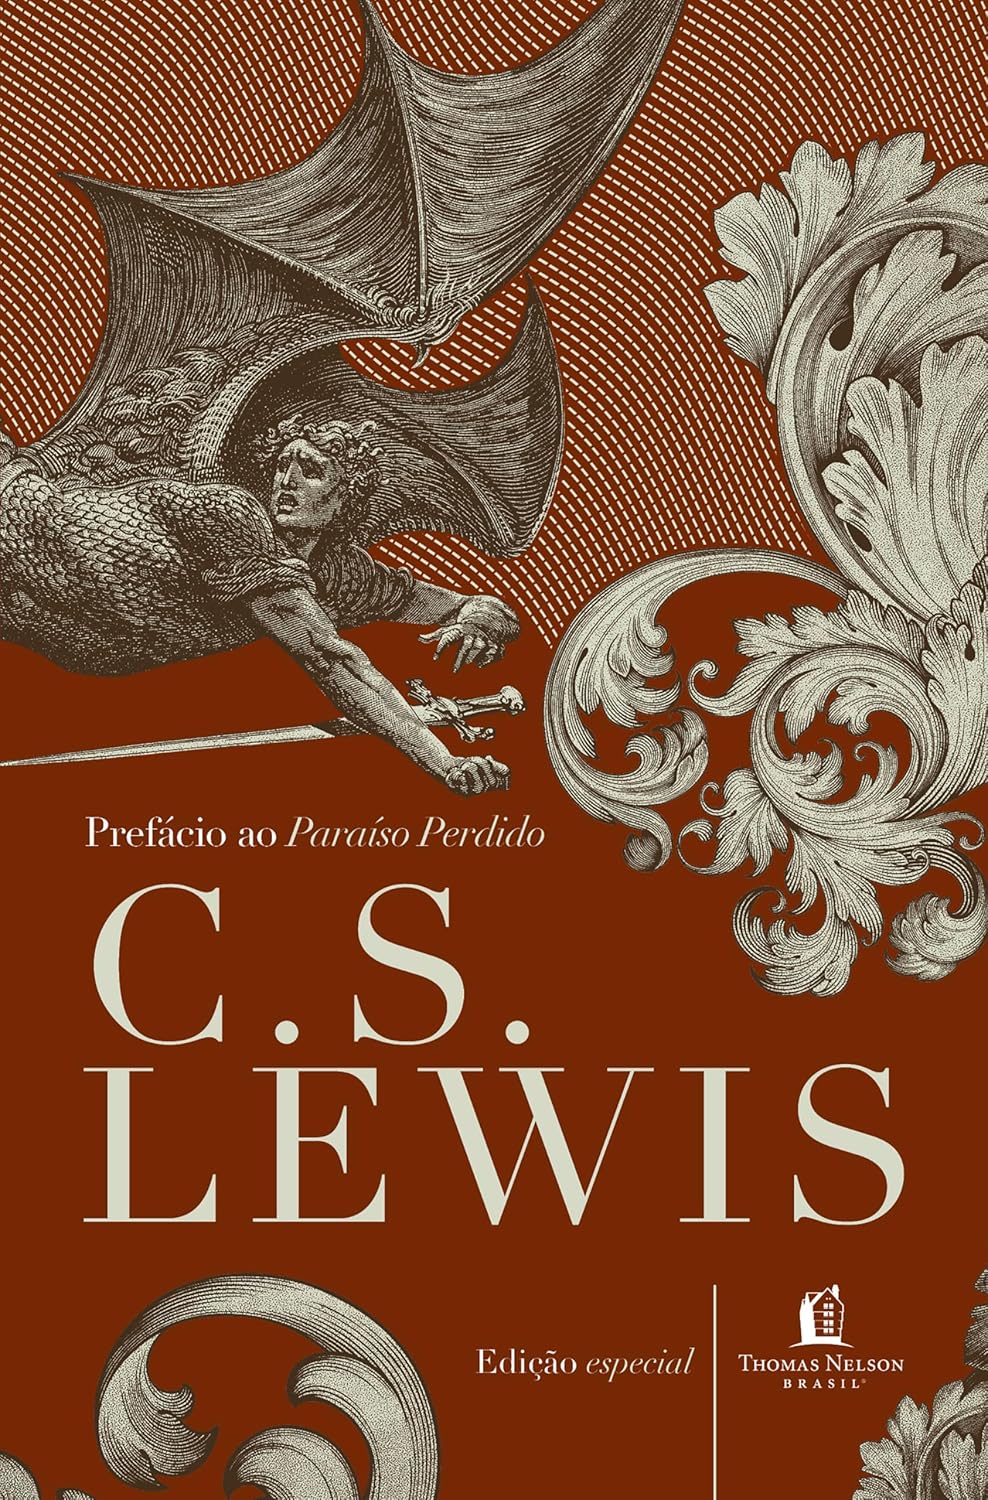 Prefácio ao Paraíso perdido - C. S. Lewis